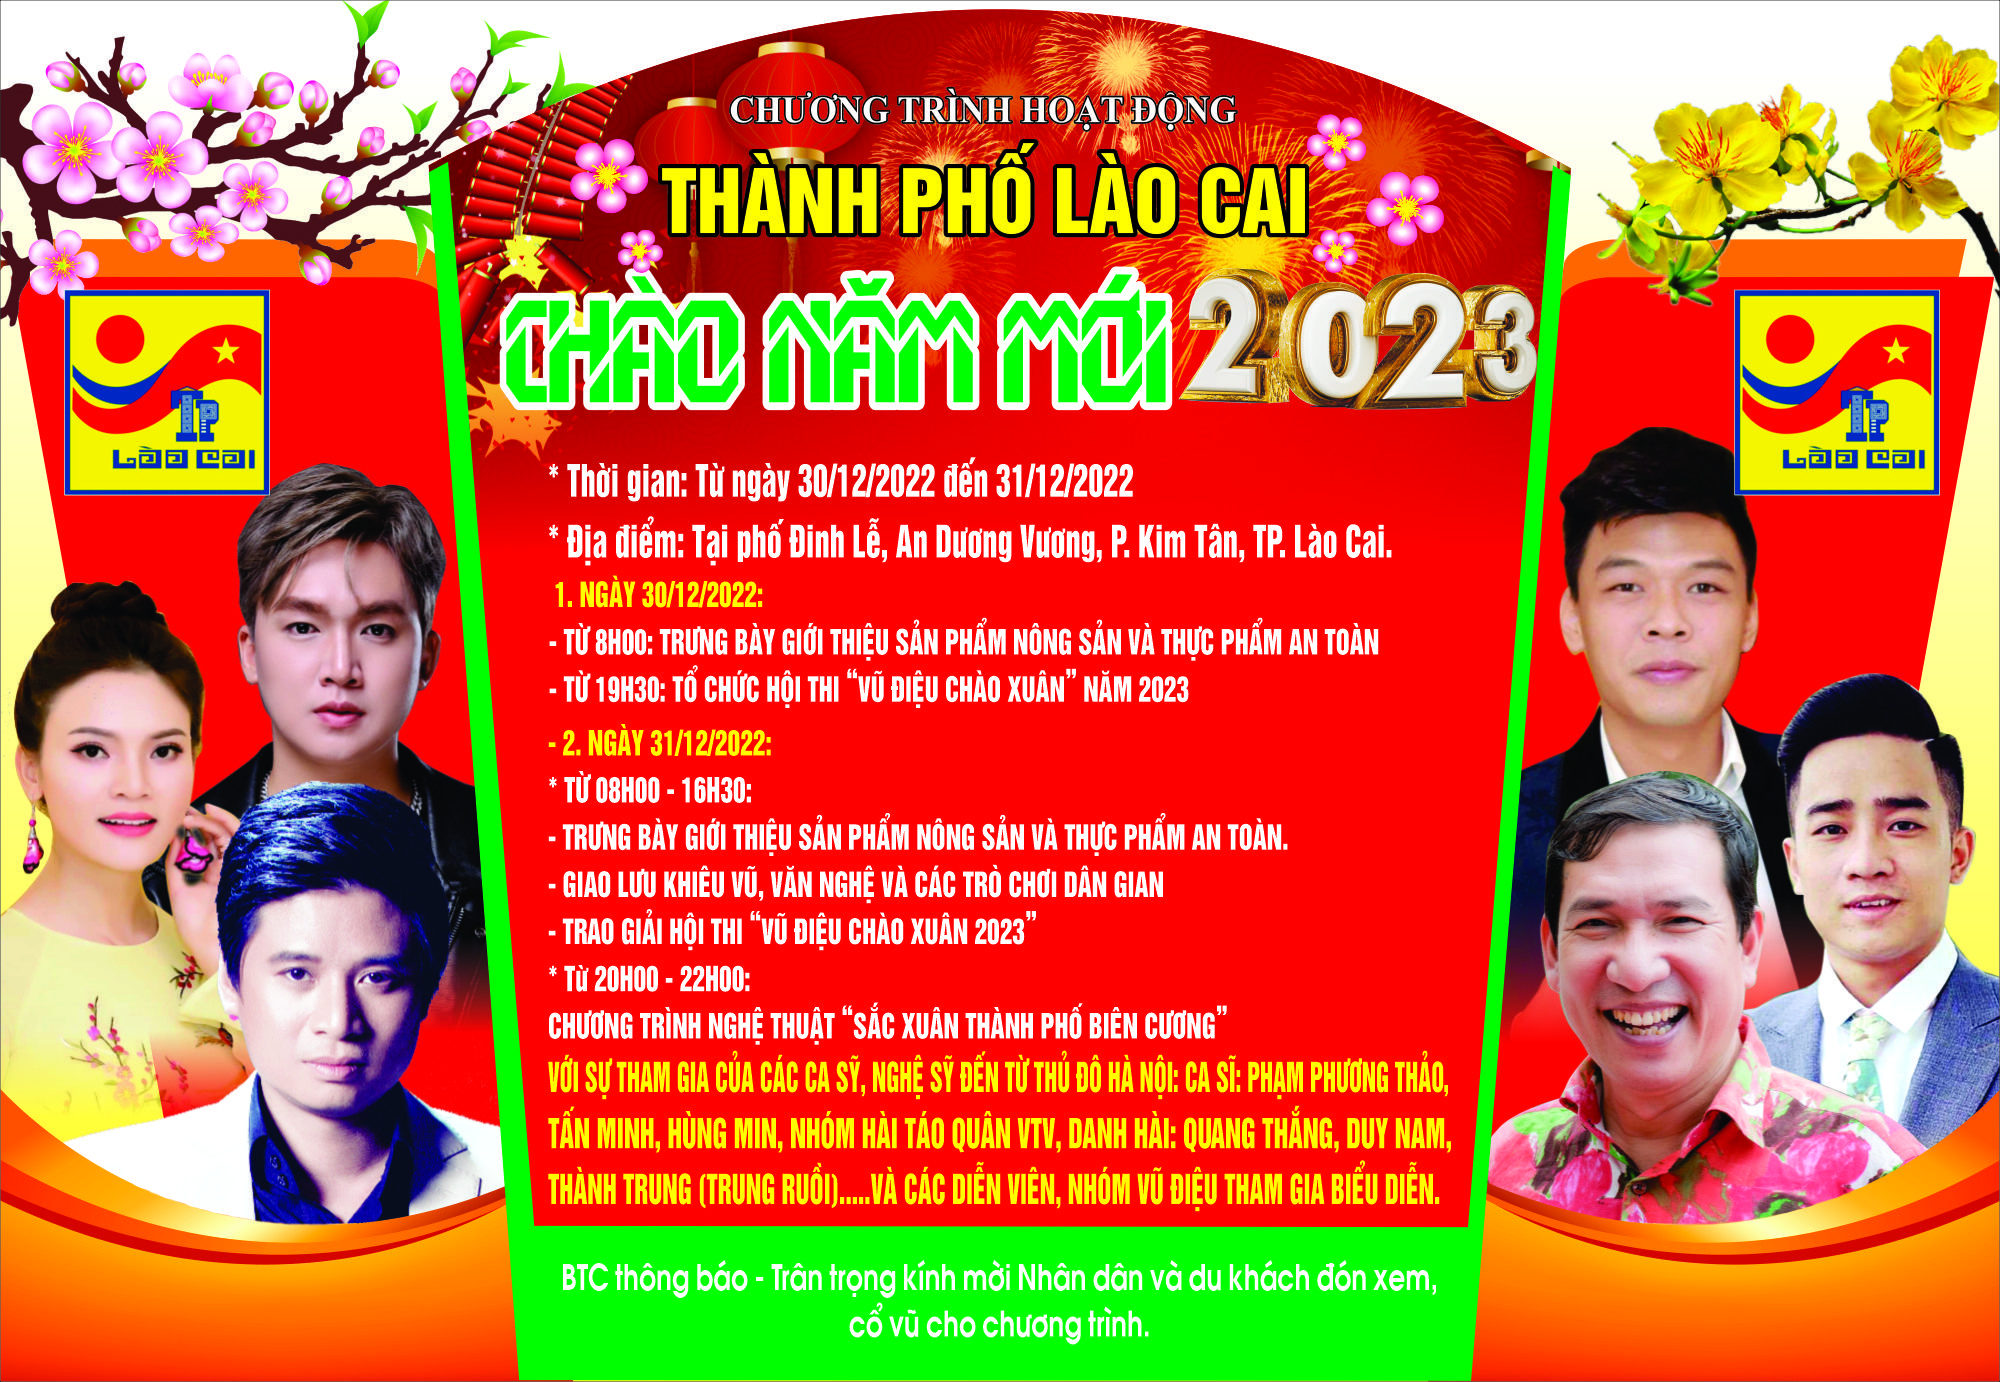 Thành phố Lào Cai tổ chức Chương trình Chào Năm mới 2023